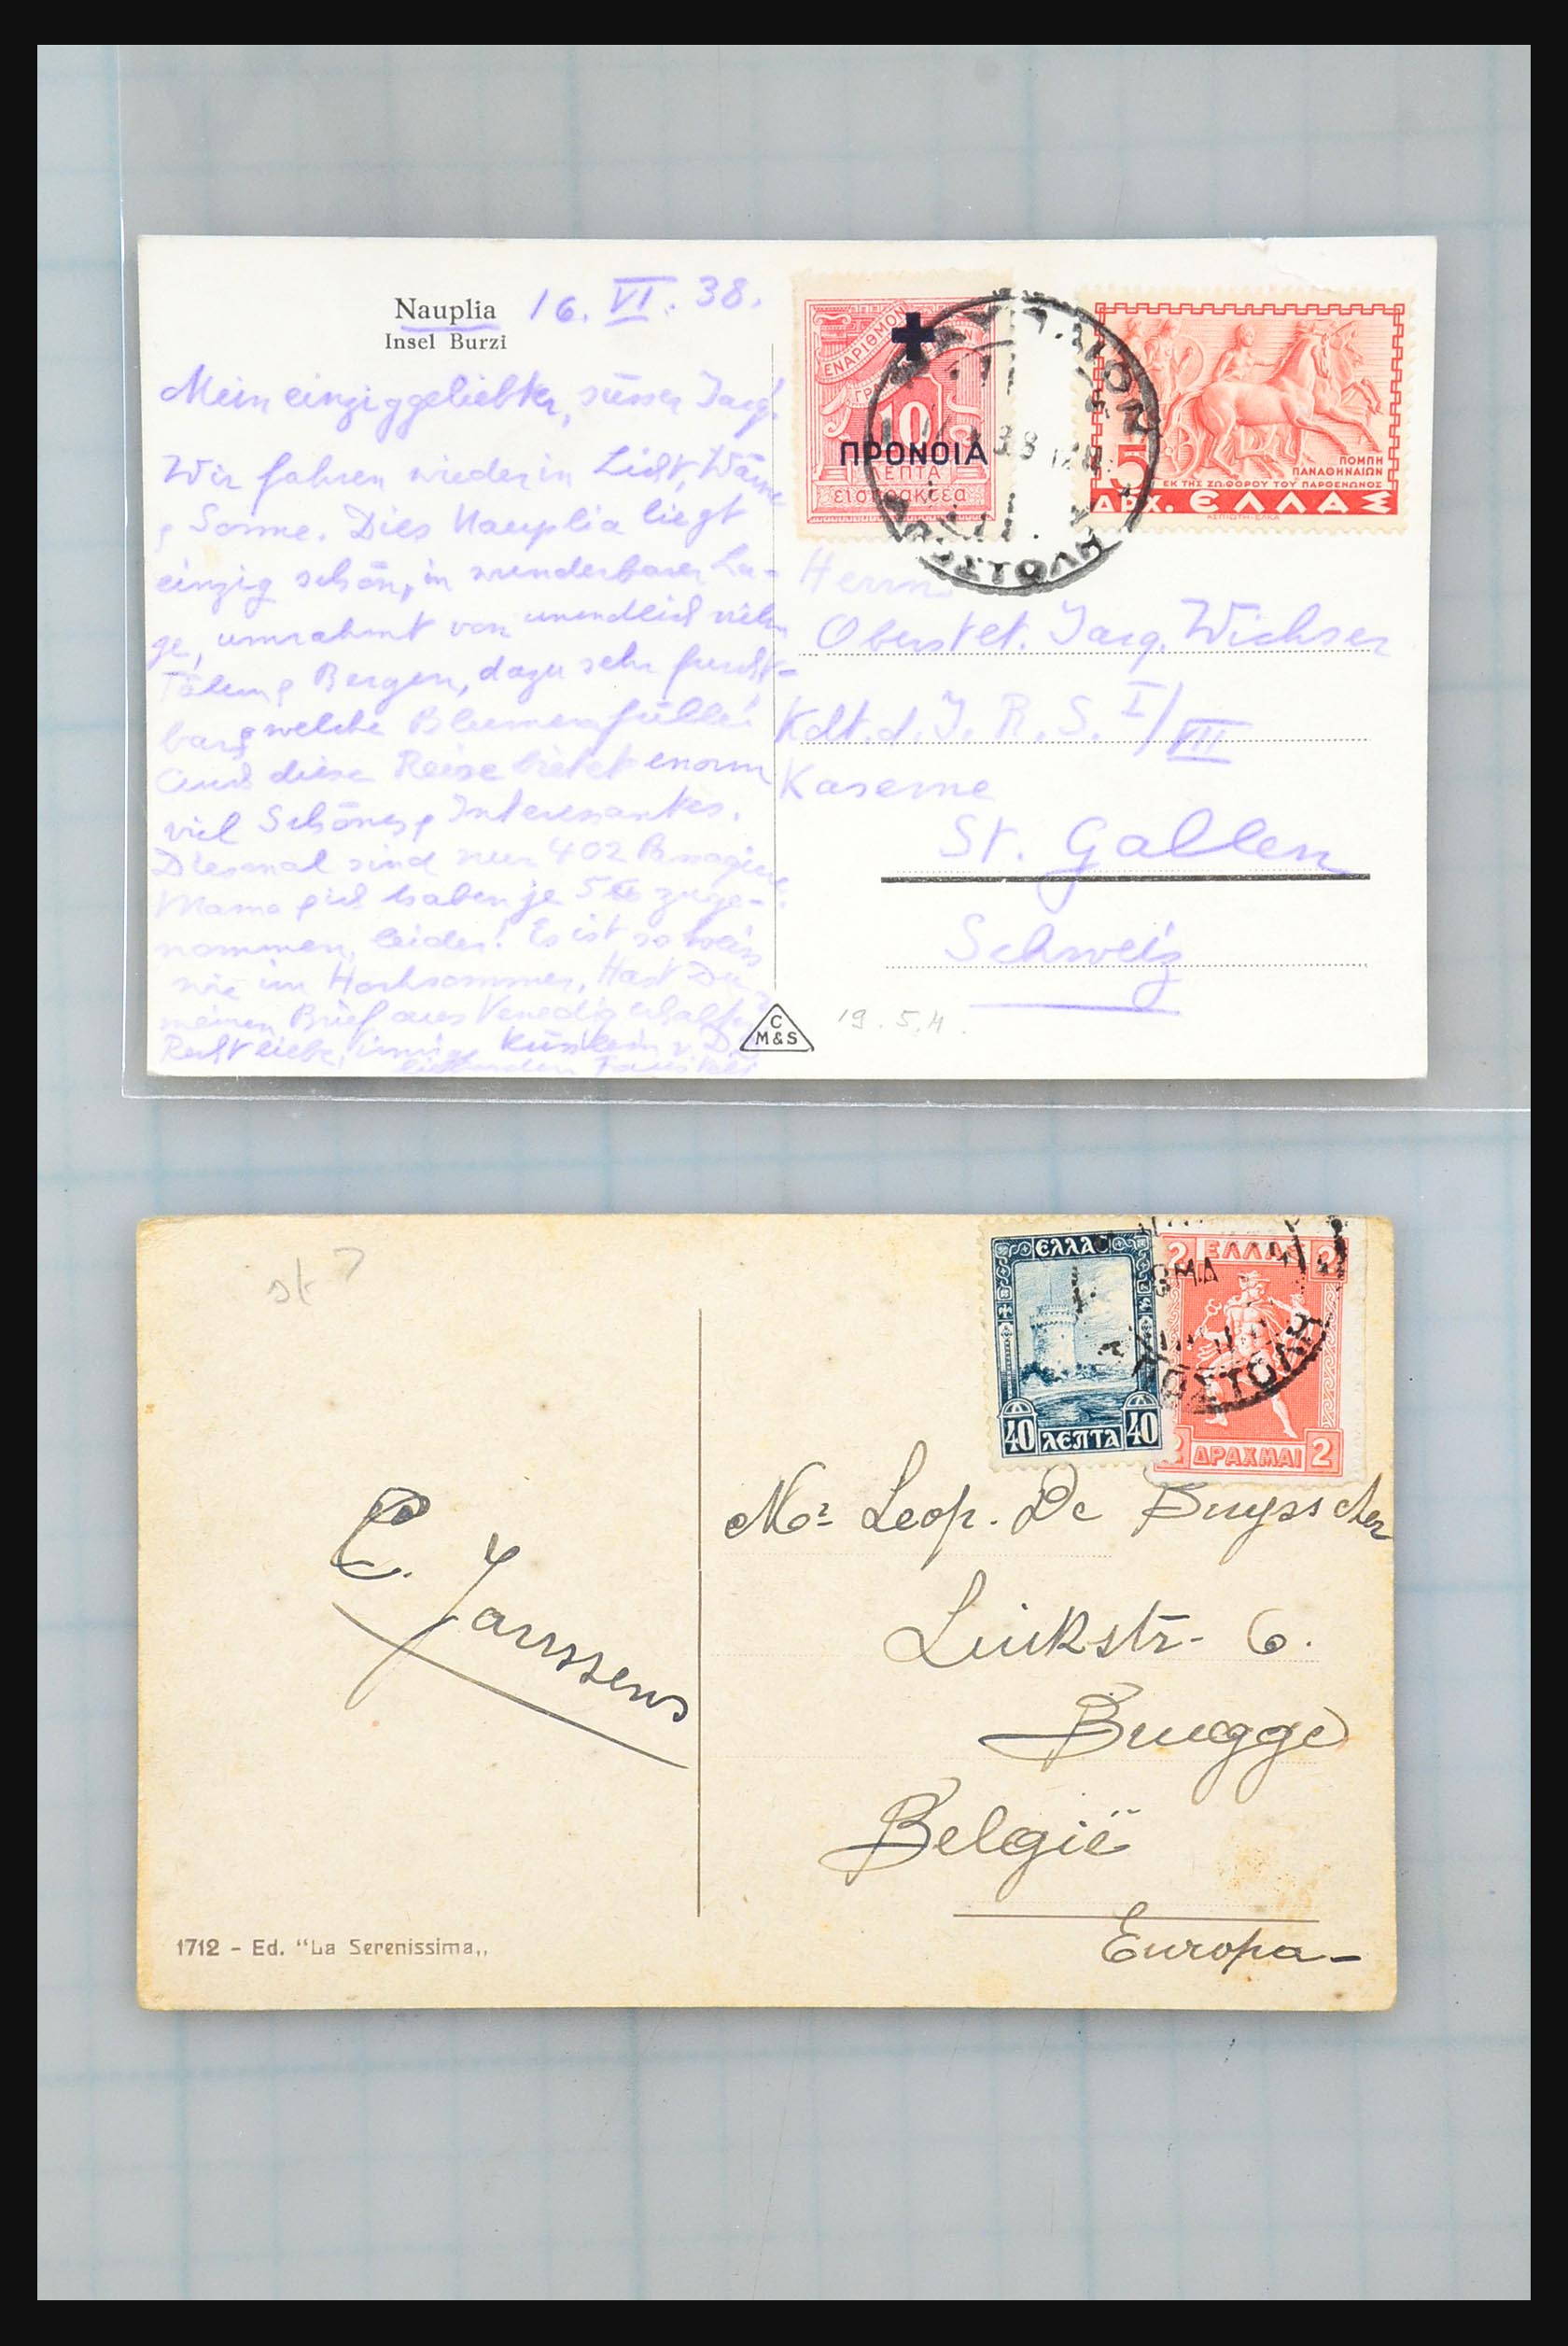 31358 184 - 31358 Portugal/Luxemburg/Griekenland brieven 1880-1960.